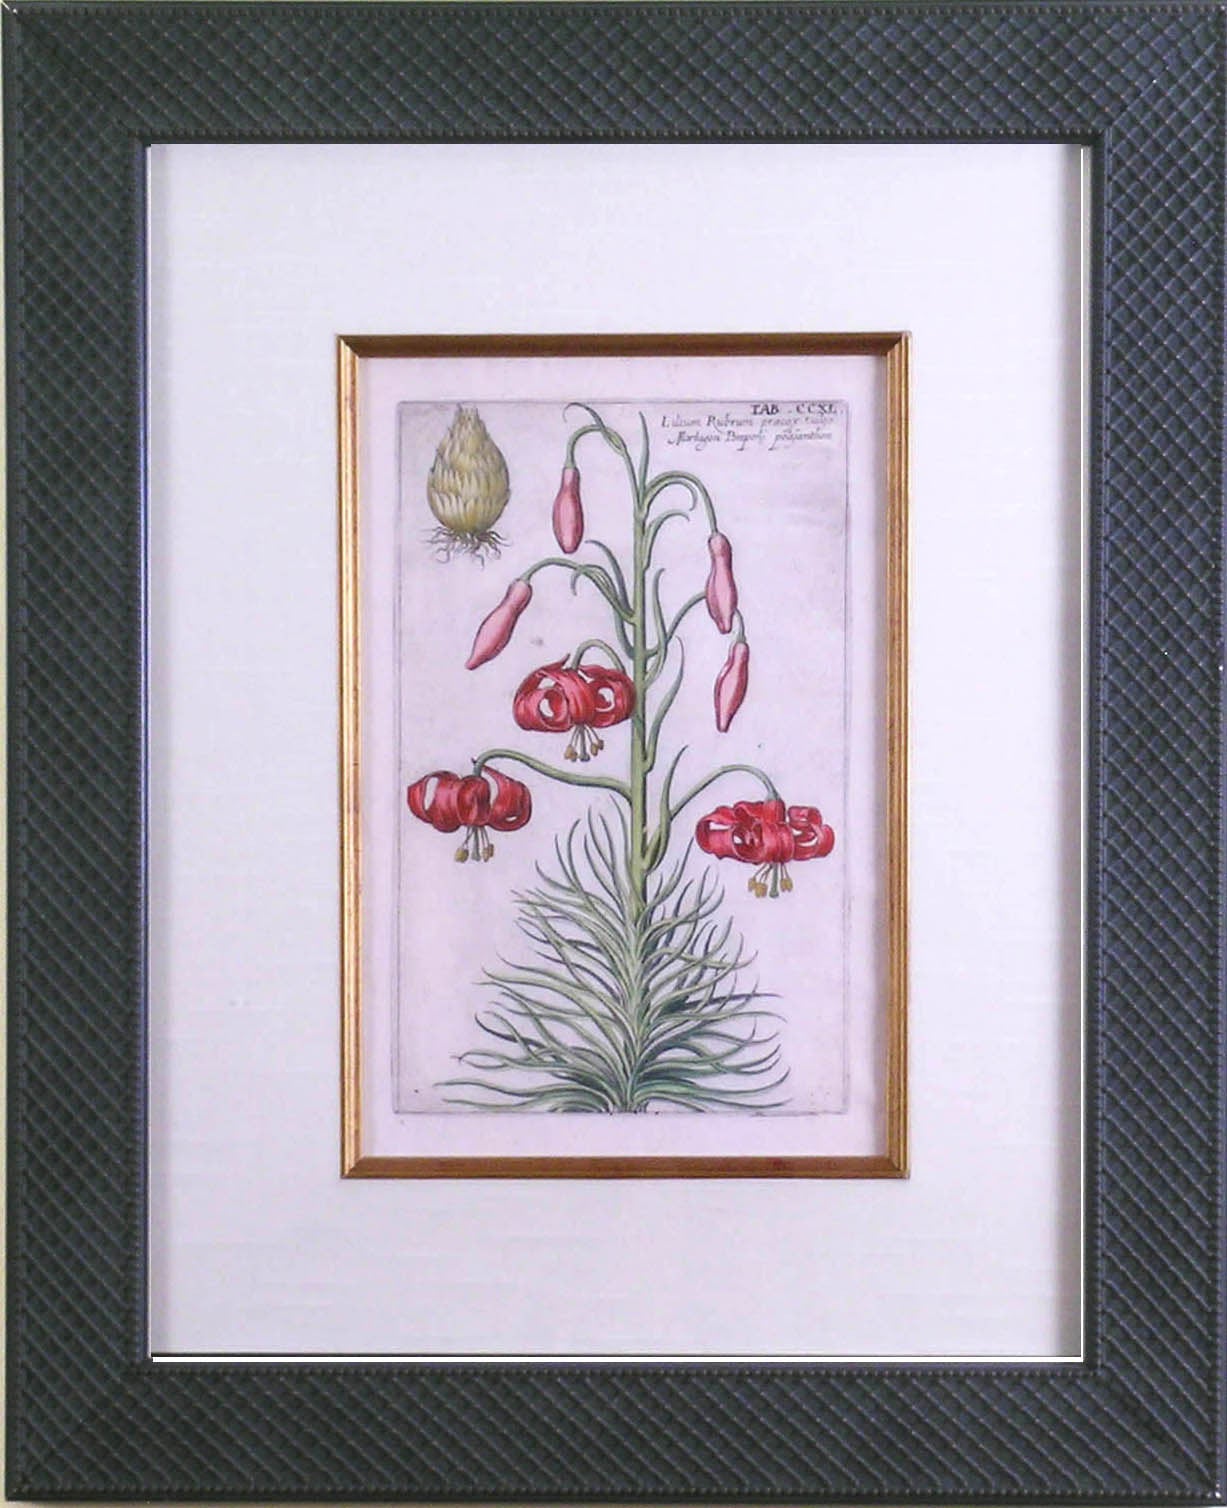 CCXL.  Red Lily - Print by Johann Theodor De Bry